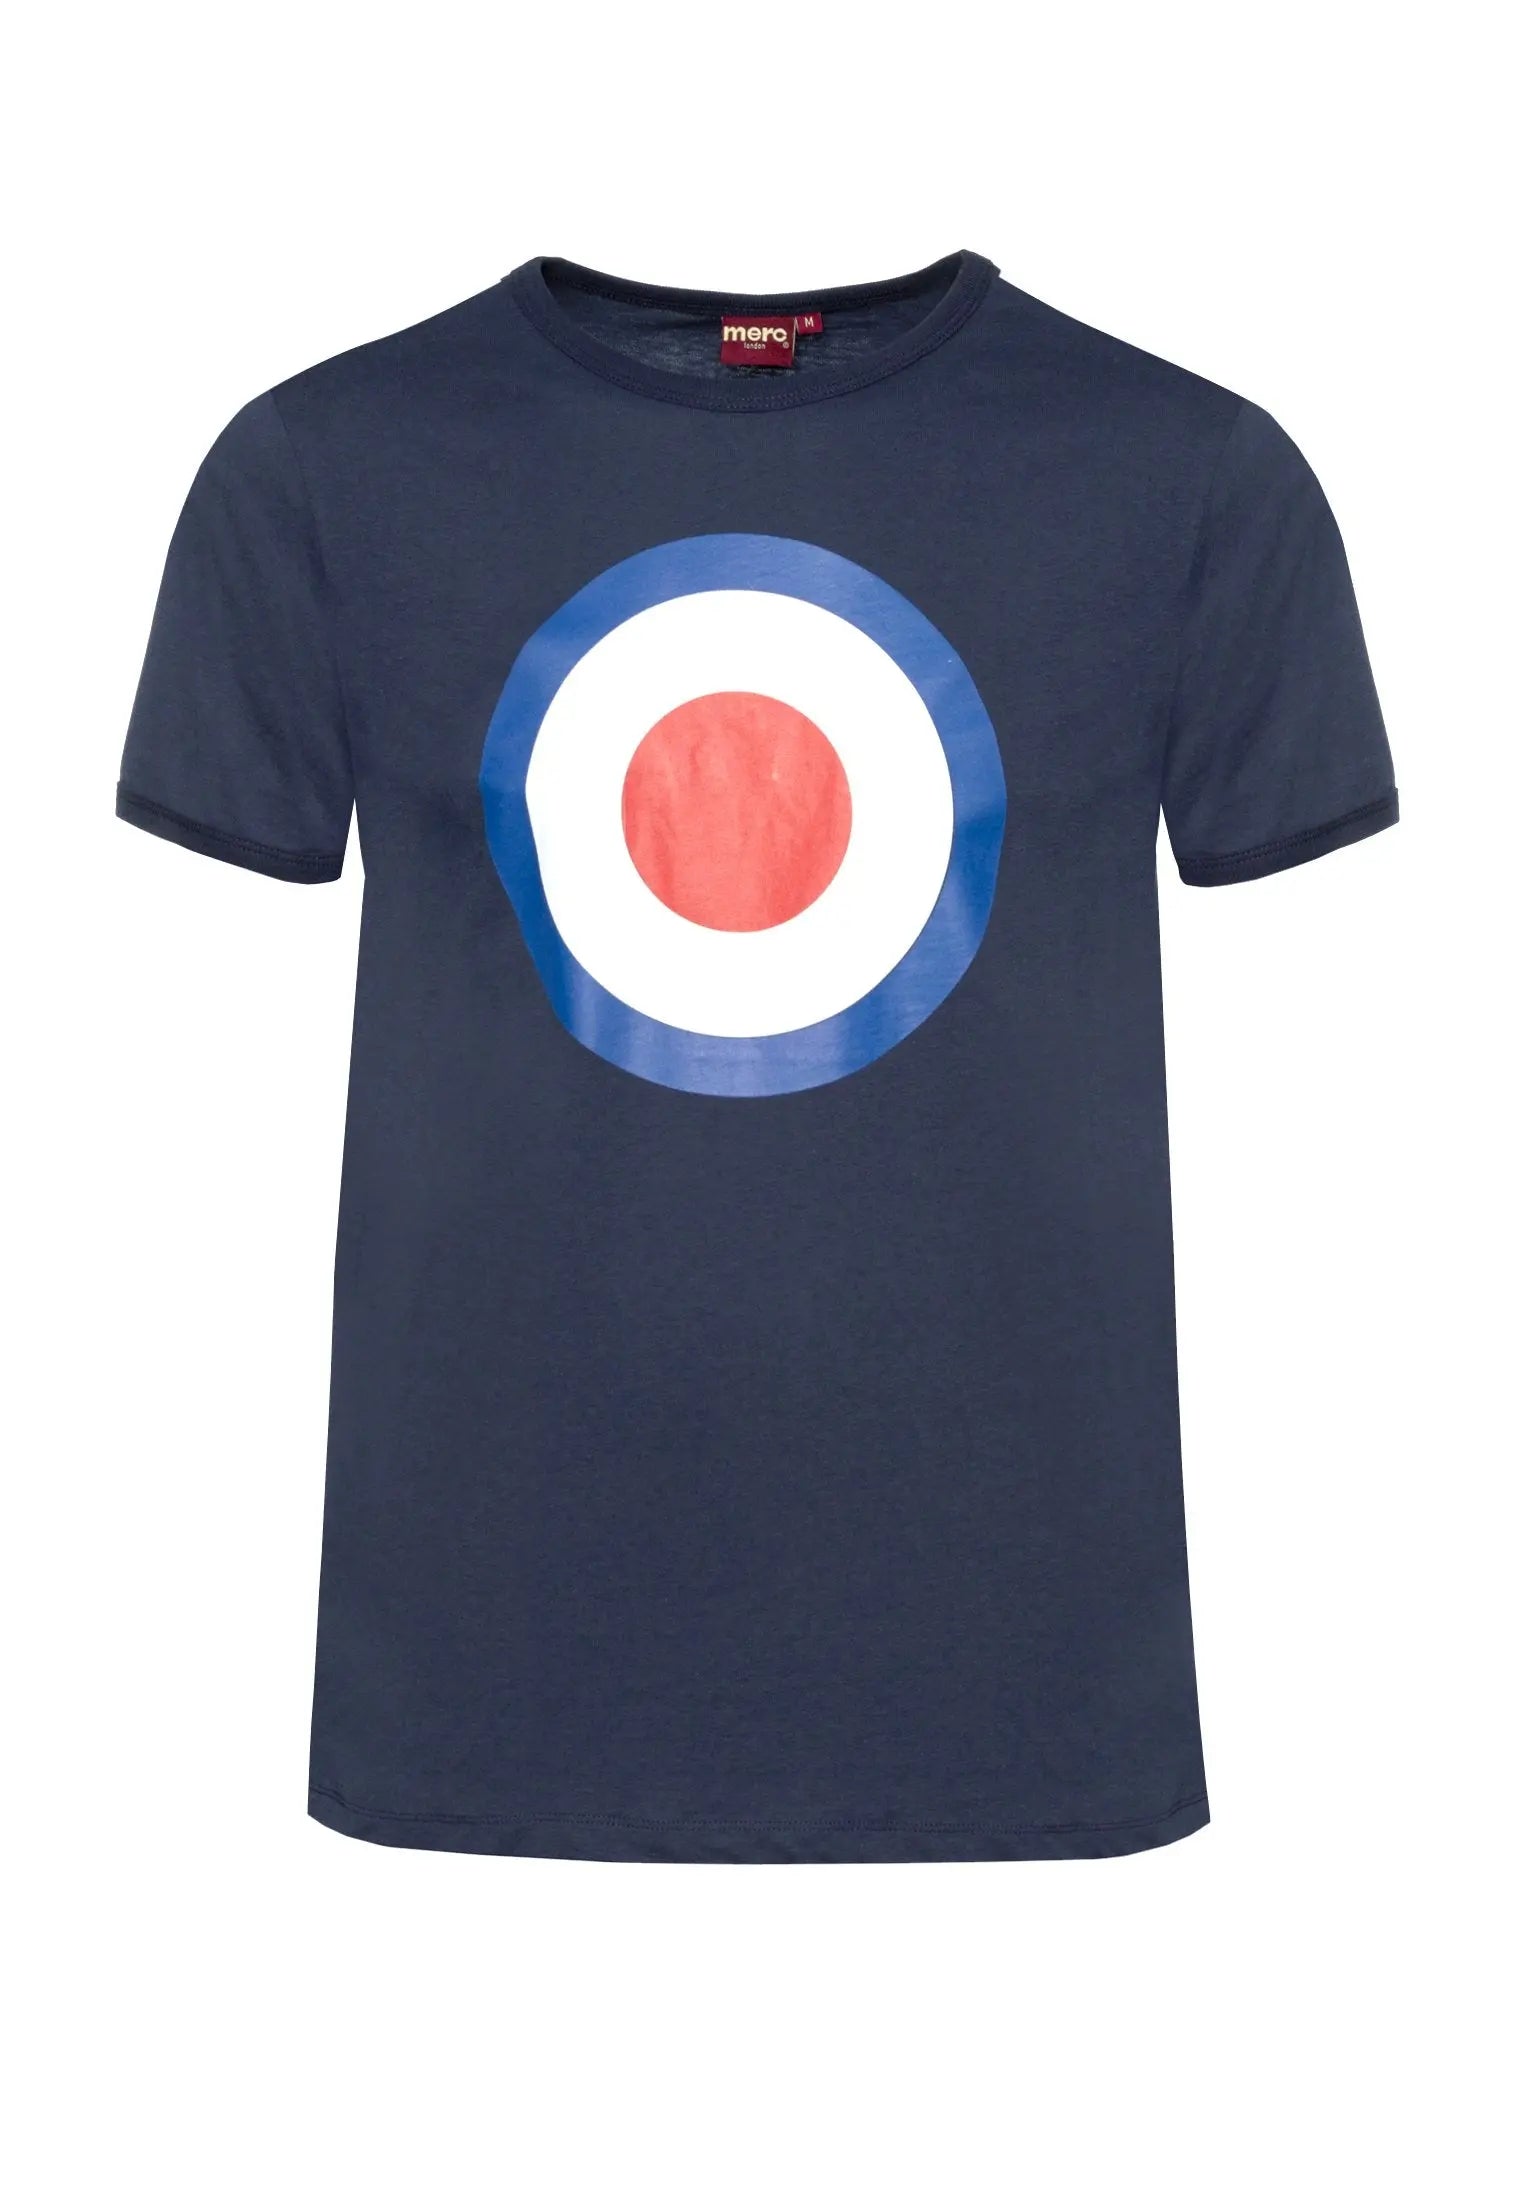 Merc London Ticket Navy Blue Target Design T-Shirt From Woven Durham